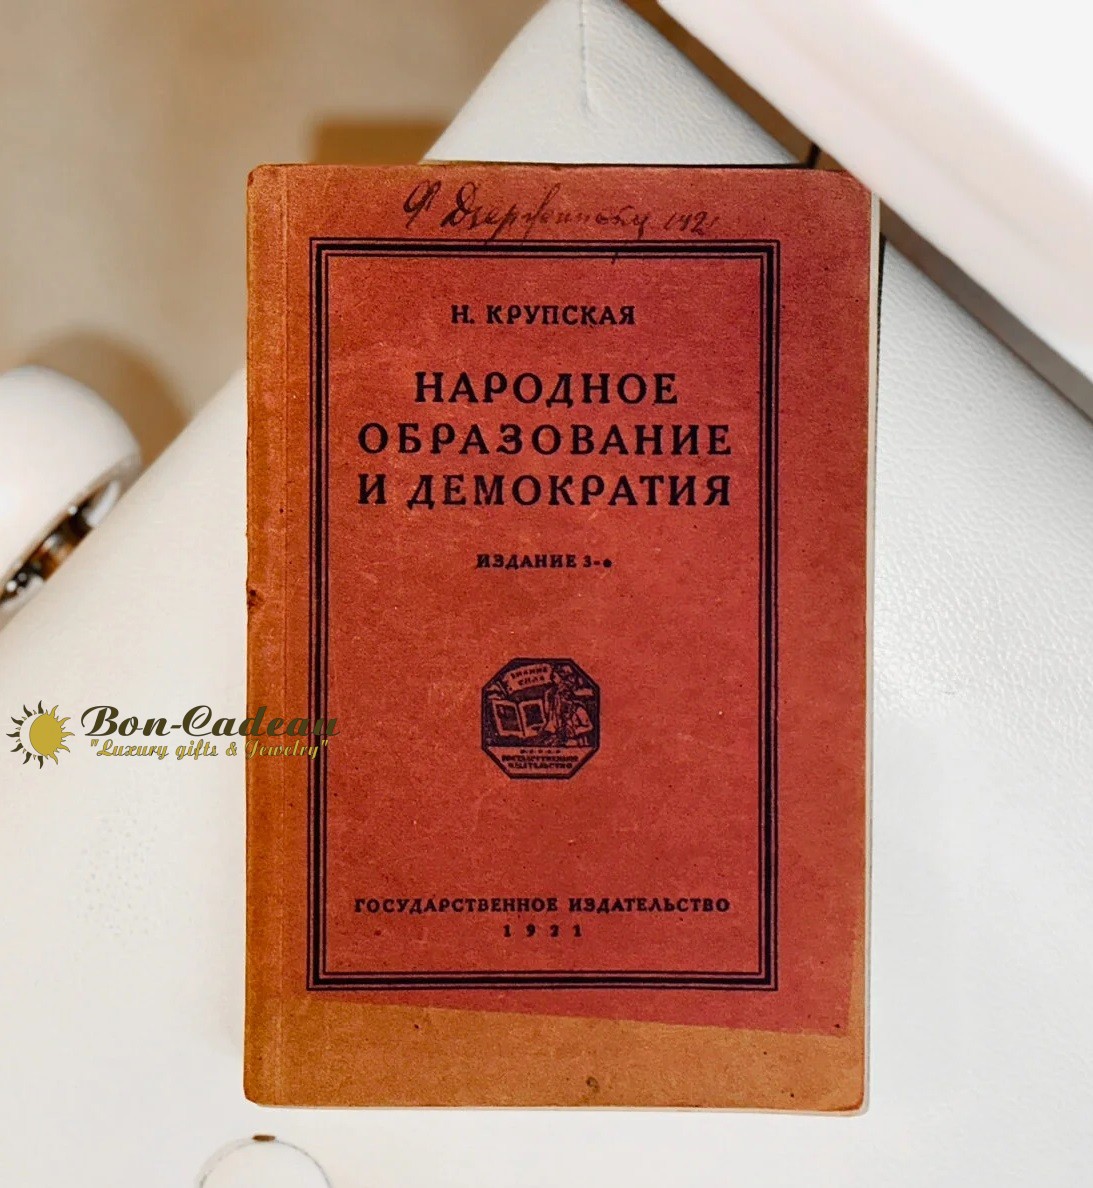 Автограф Ф. Дзержинского (Народное образование и демократия)